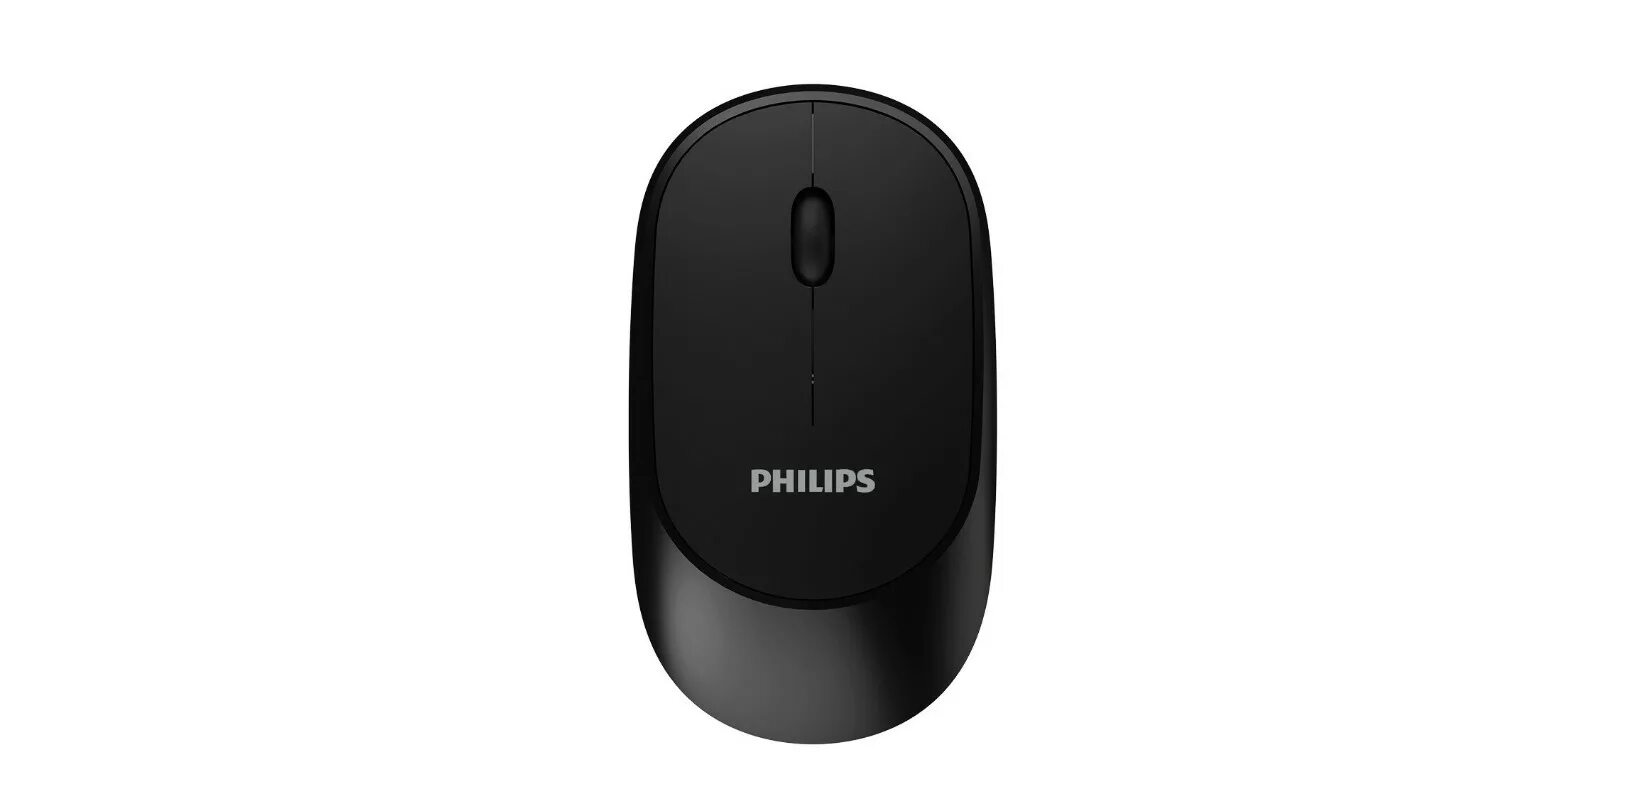 Филипс wifi. Мышь беспроводная Philips spk7607. Мышь беспроводная Philips spk7307bl 3кнопки, 1600dpi, чёрный. Мышка Philips m344 беспроводная. Philips беспроводная мышь spk7607 2,4 GHZ, Bluetooth 3.0/5.0.